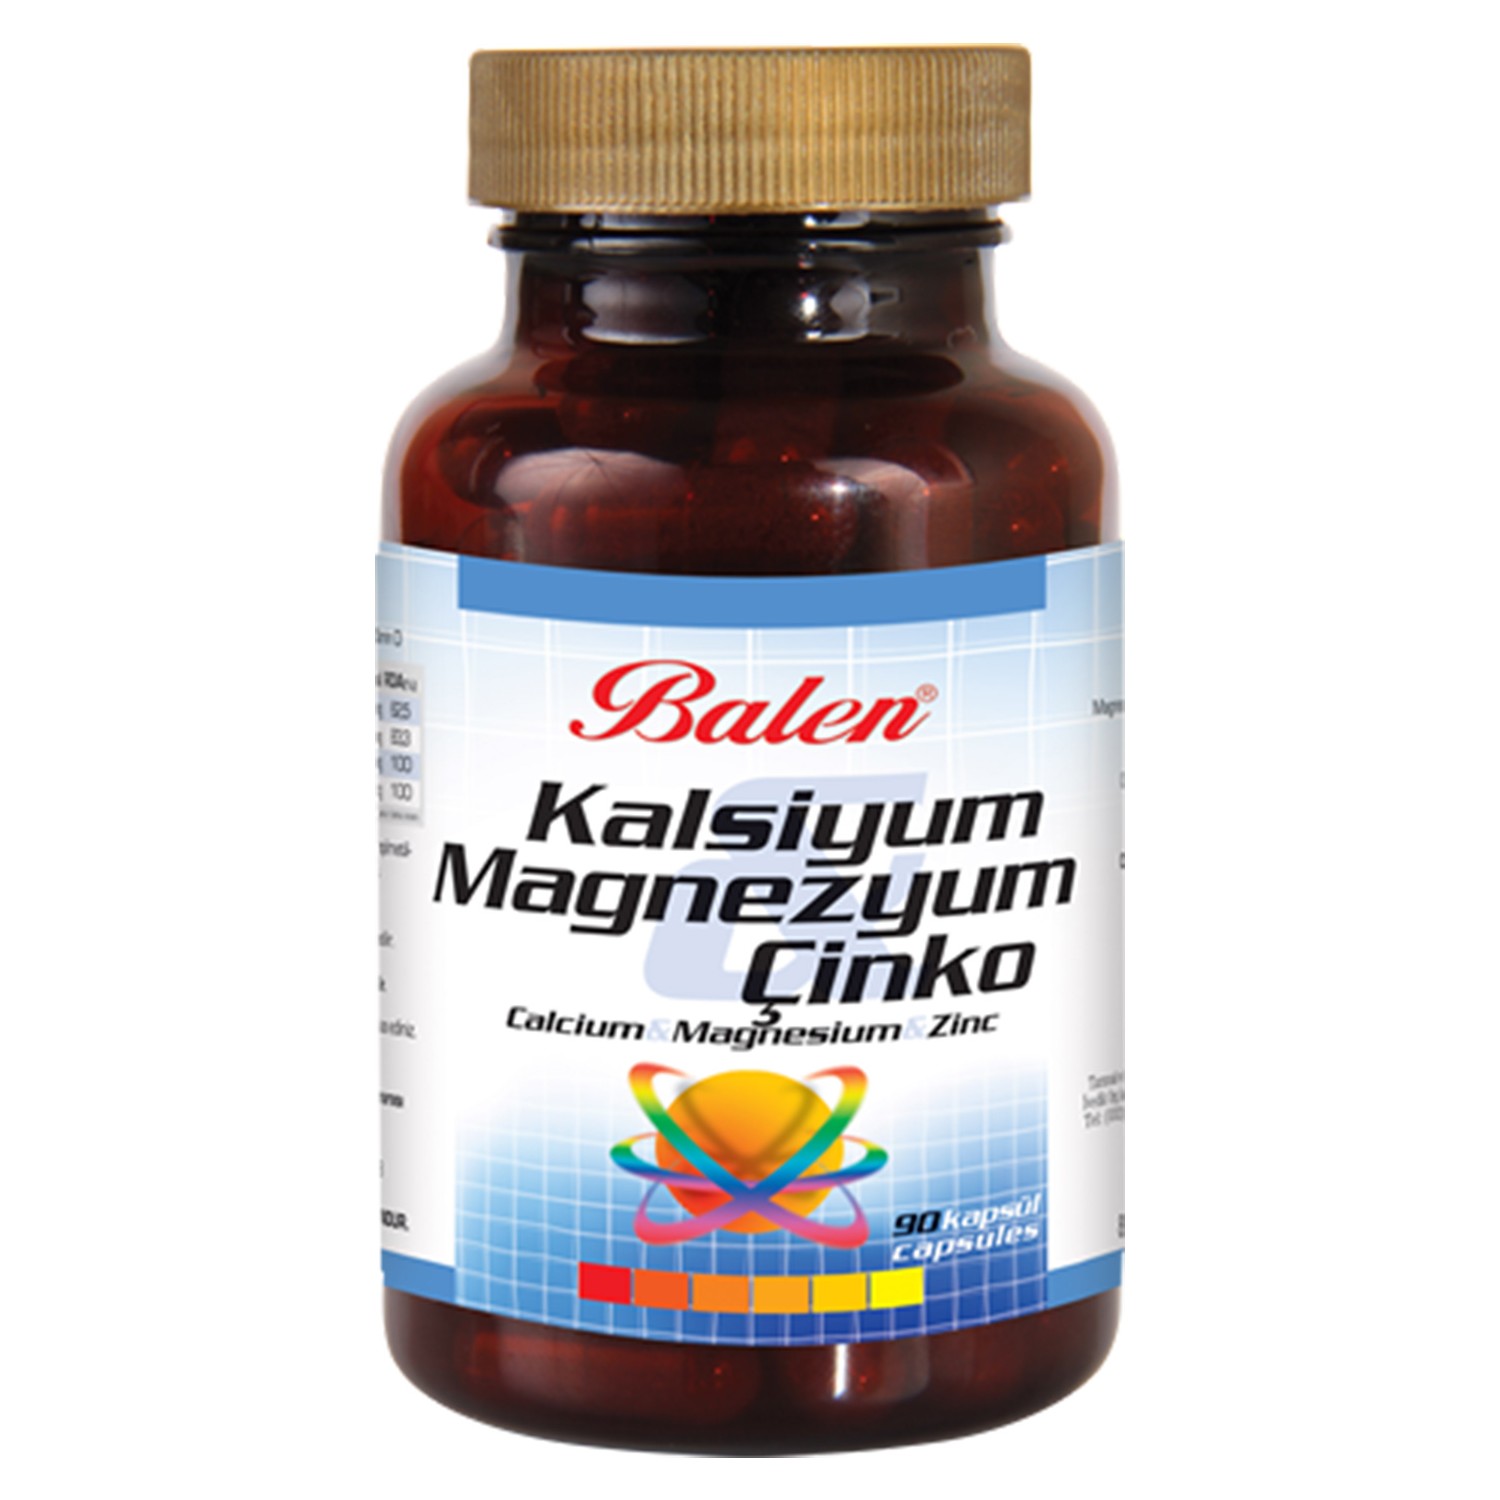 Витаминный комплекс Balen кальций, магний, цинк, 90 капсул витаминный комплекс balen omega 3 витамин b кальций магний цинк